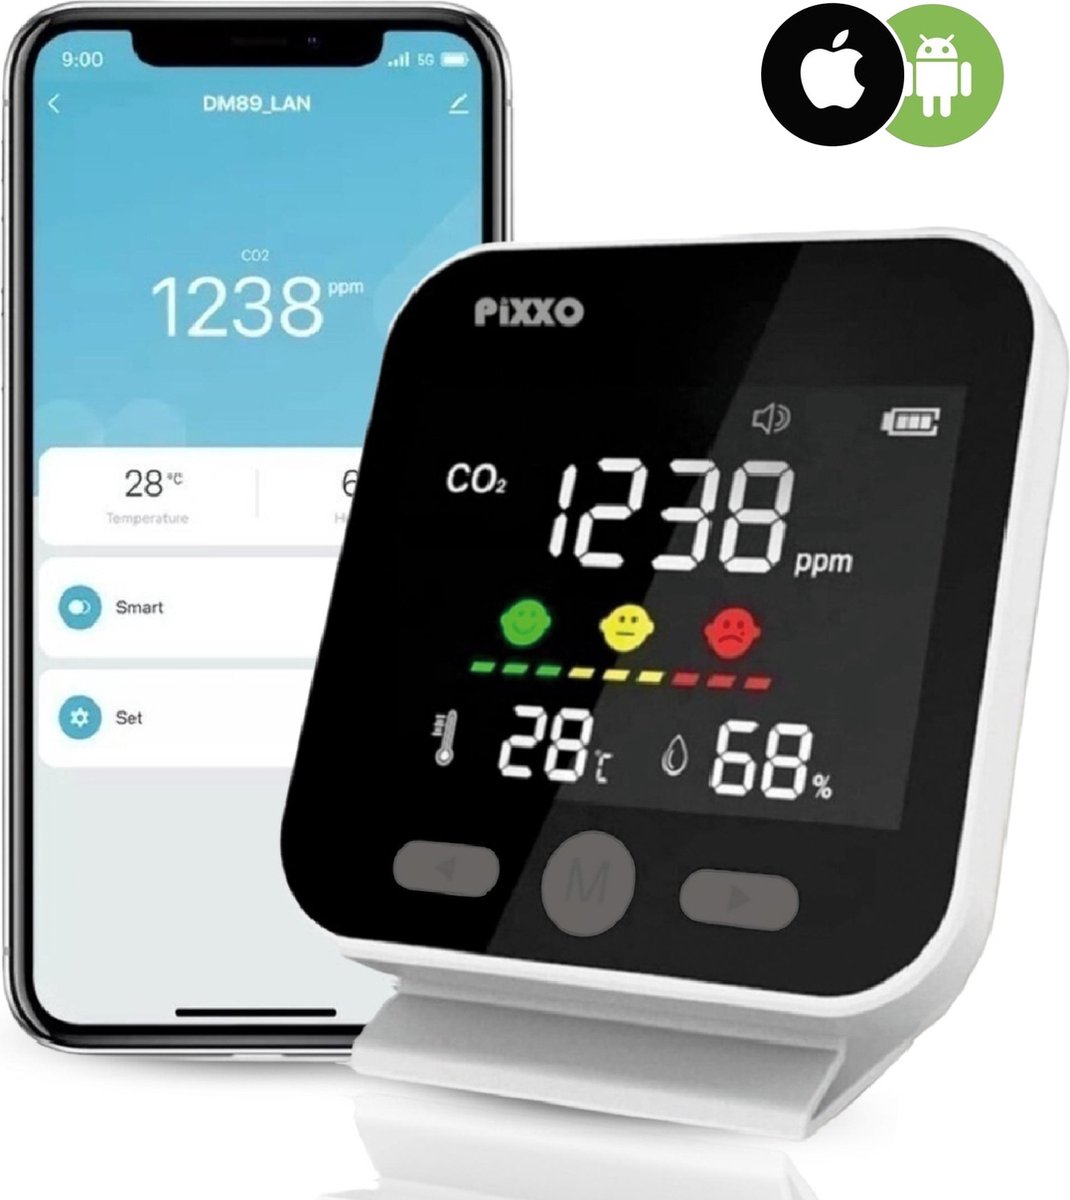 PiXXO® CO2 meter review